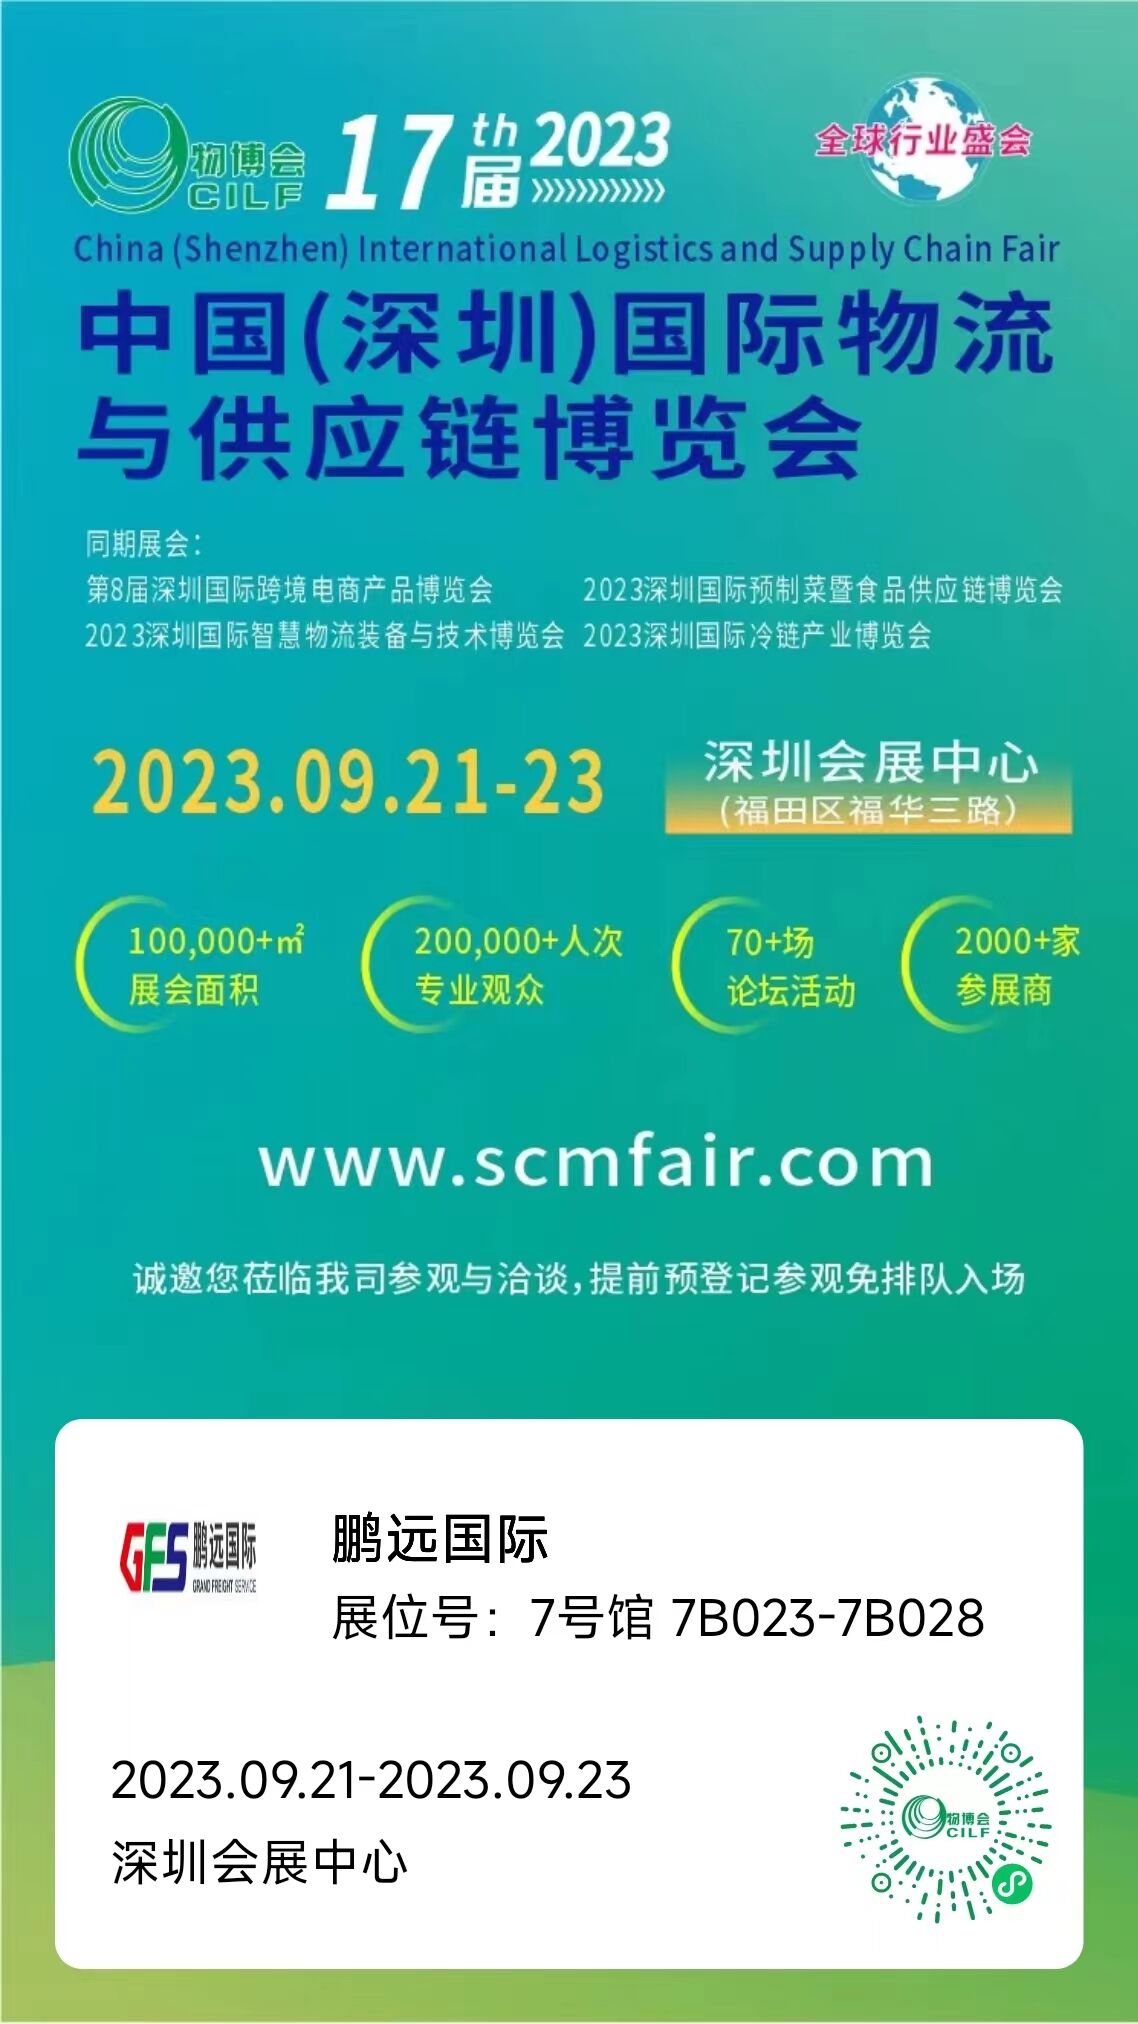 邀请 | 9月21日鹏远国际在中国(深圳)国际物流与供应链博览会等你来